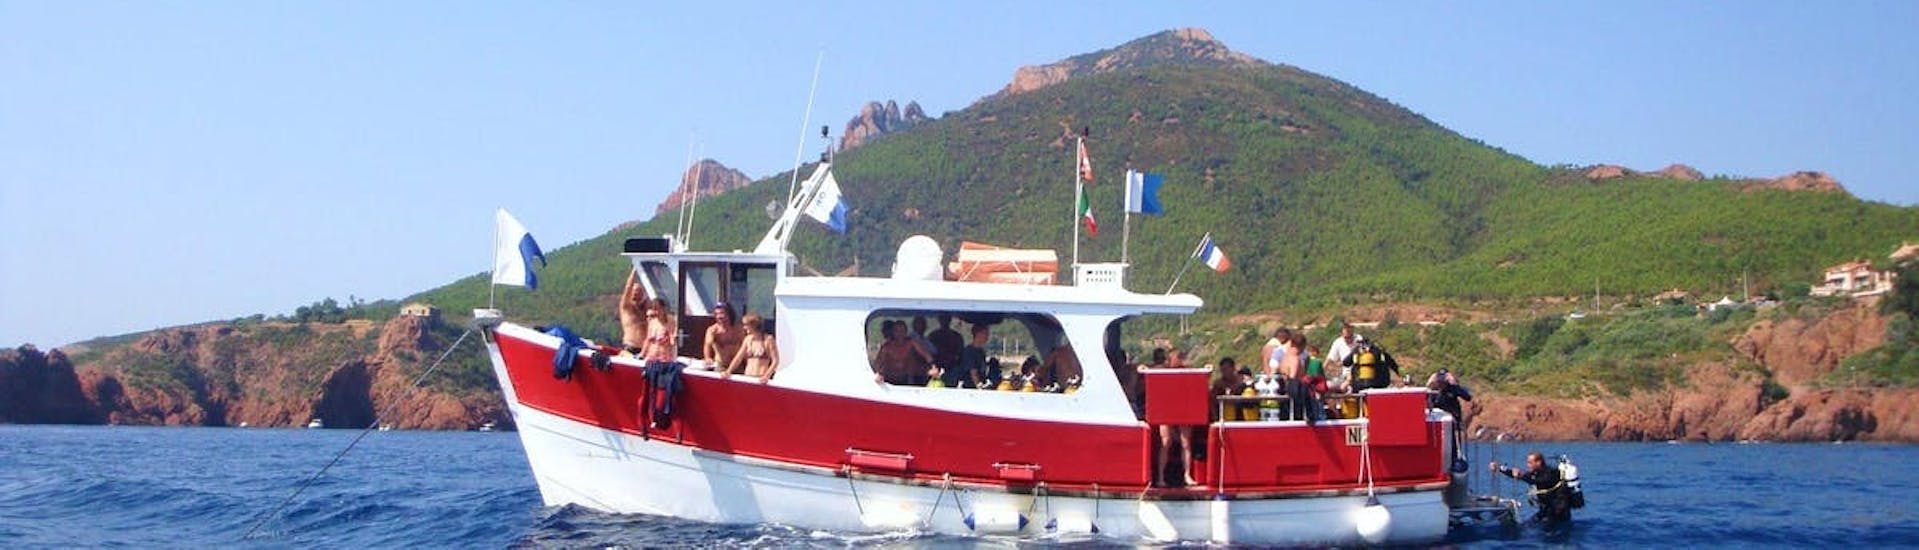 Blick auf das Boot während des Schnuppertauchgangs im Naturpark Esterel oder den Lerins-Inseln mit dem La Rague Dive Centre.